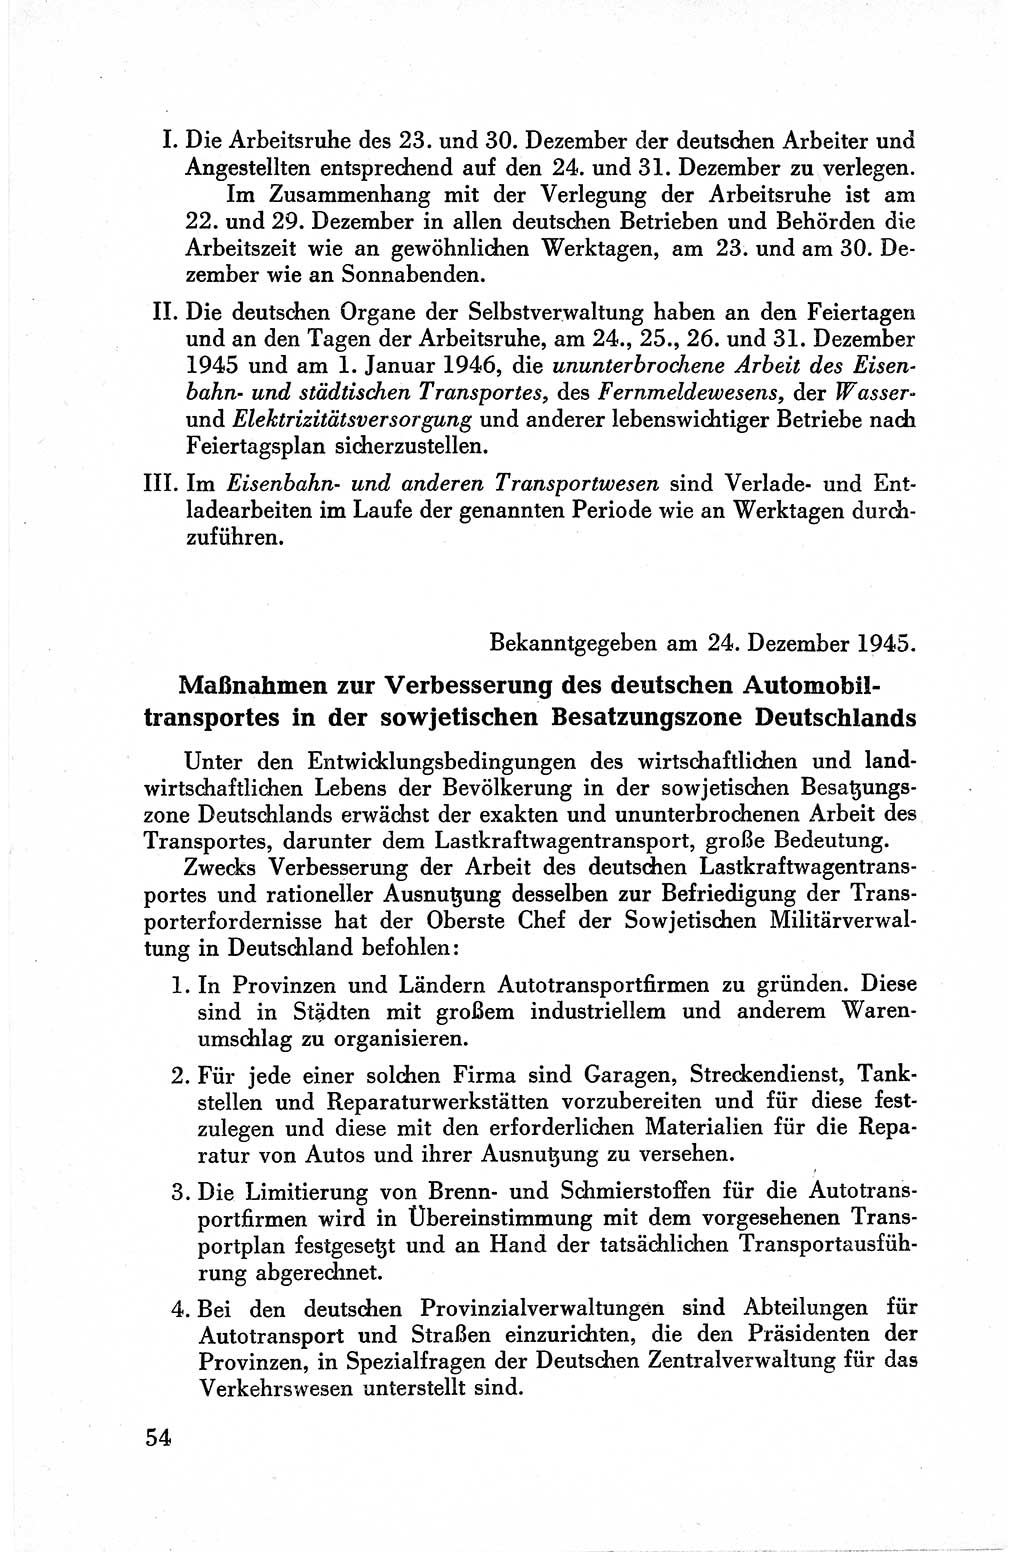 Befehle des Obersten Chefs der Sowjetischen Miltärverwaltung (SMV) in Deutschland - Aus dem Stab der Sowjetischen Militärverwaltung in Deutschland 1945, Seite 54 (Bef. SMV Dtl. 1945, S. 54)